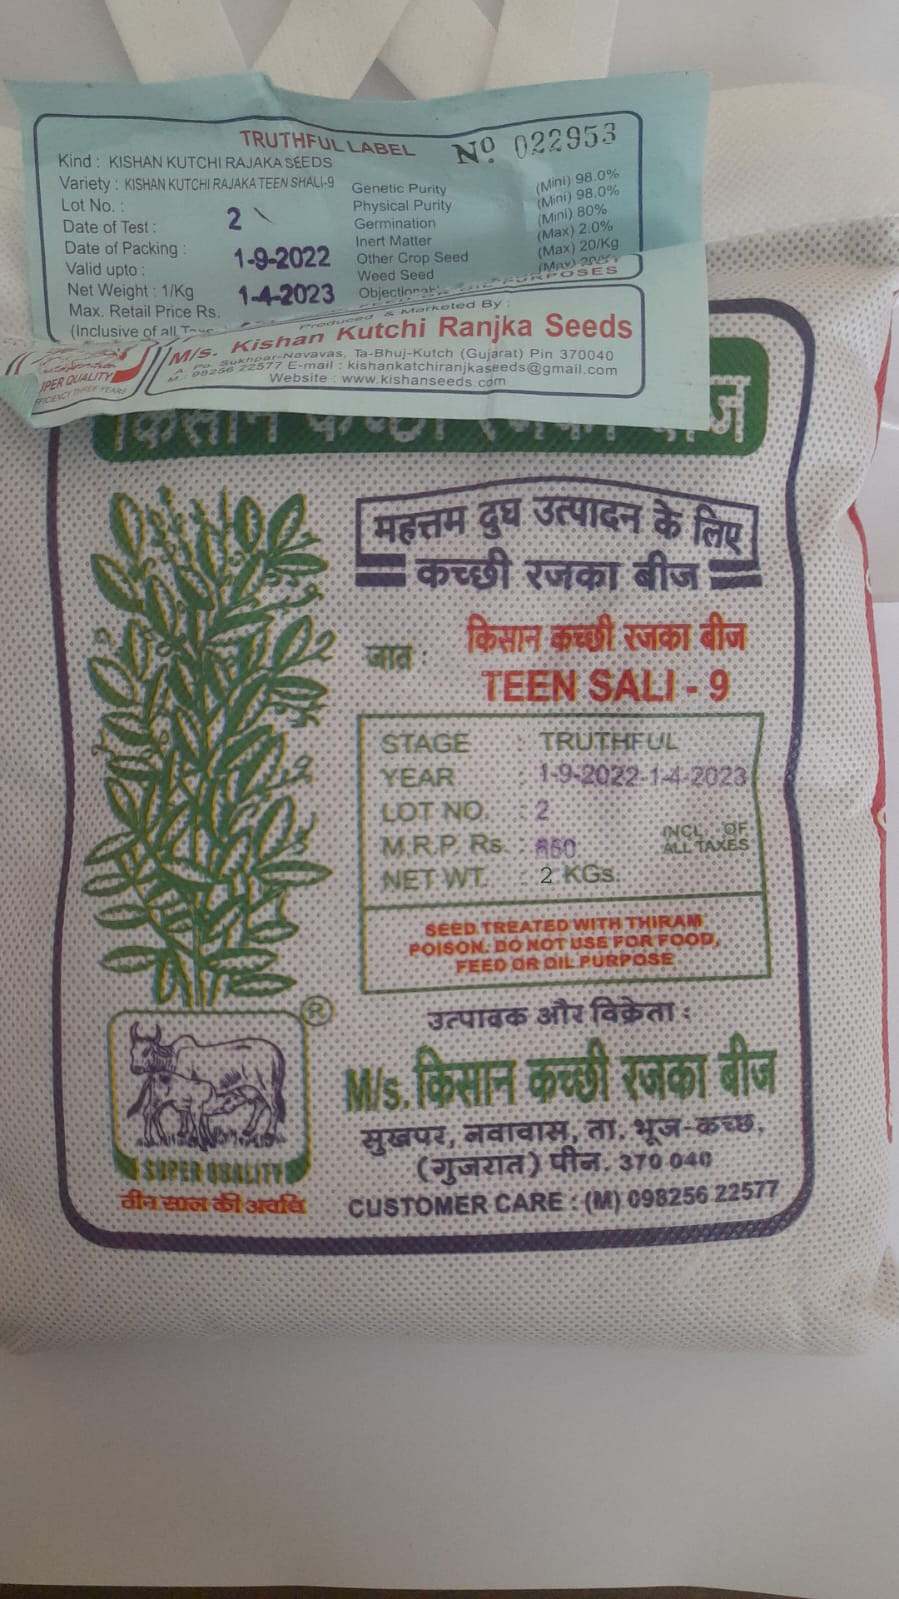 Kishan Kutchi Ranjka seeds-2kg